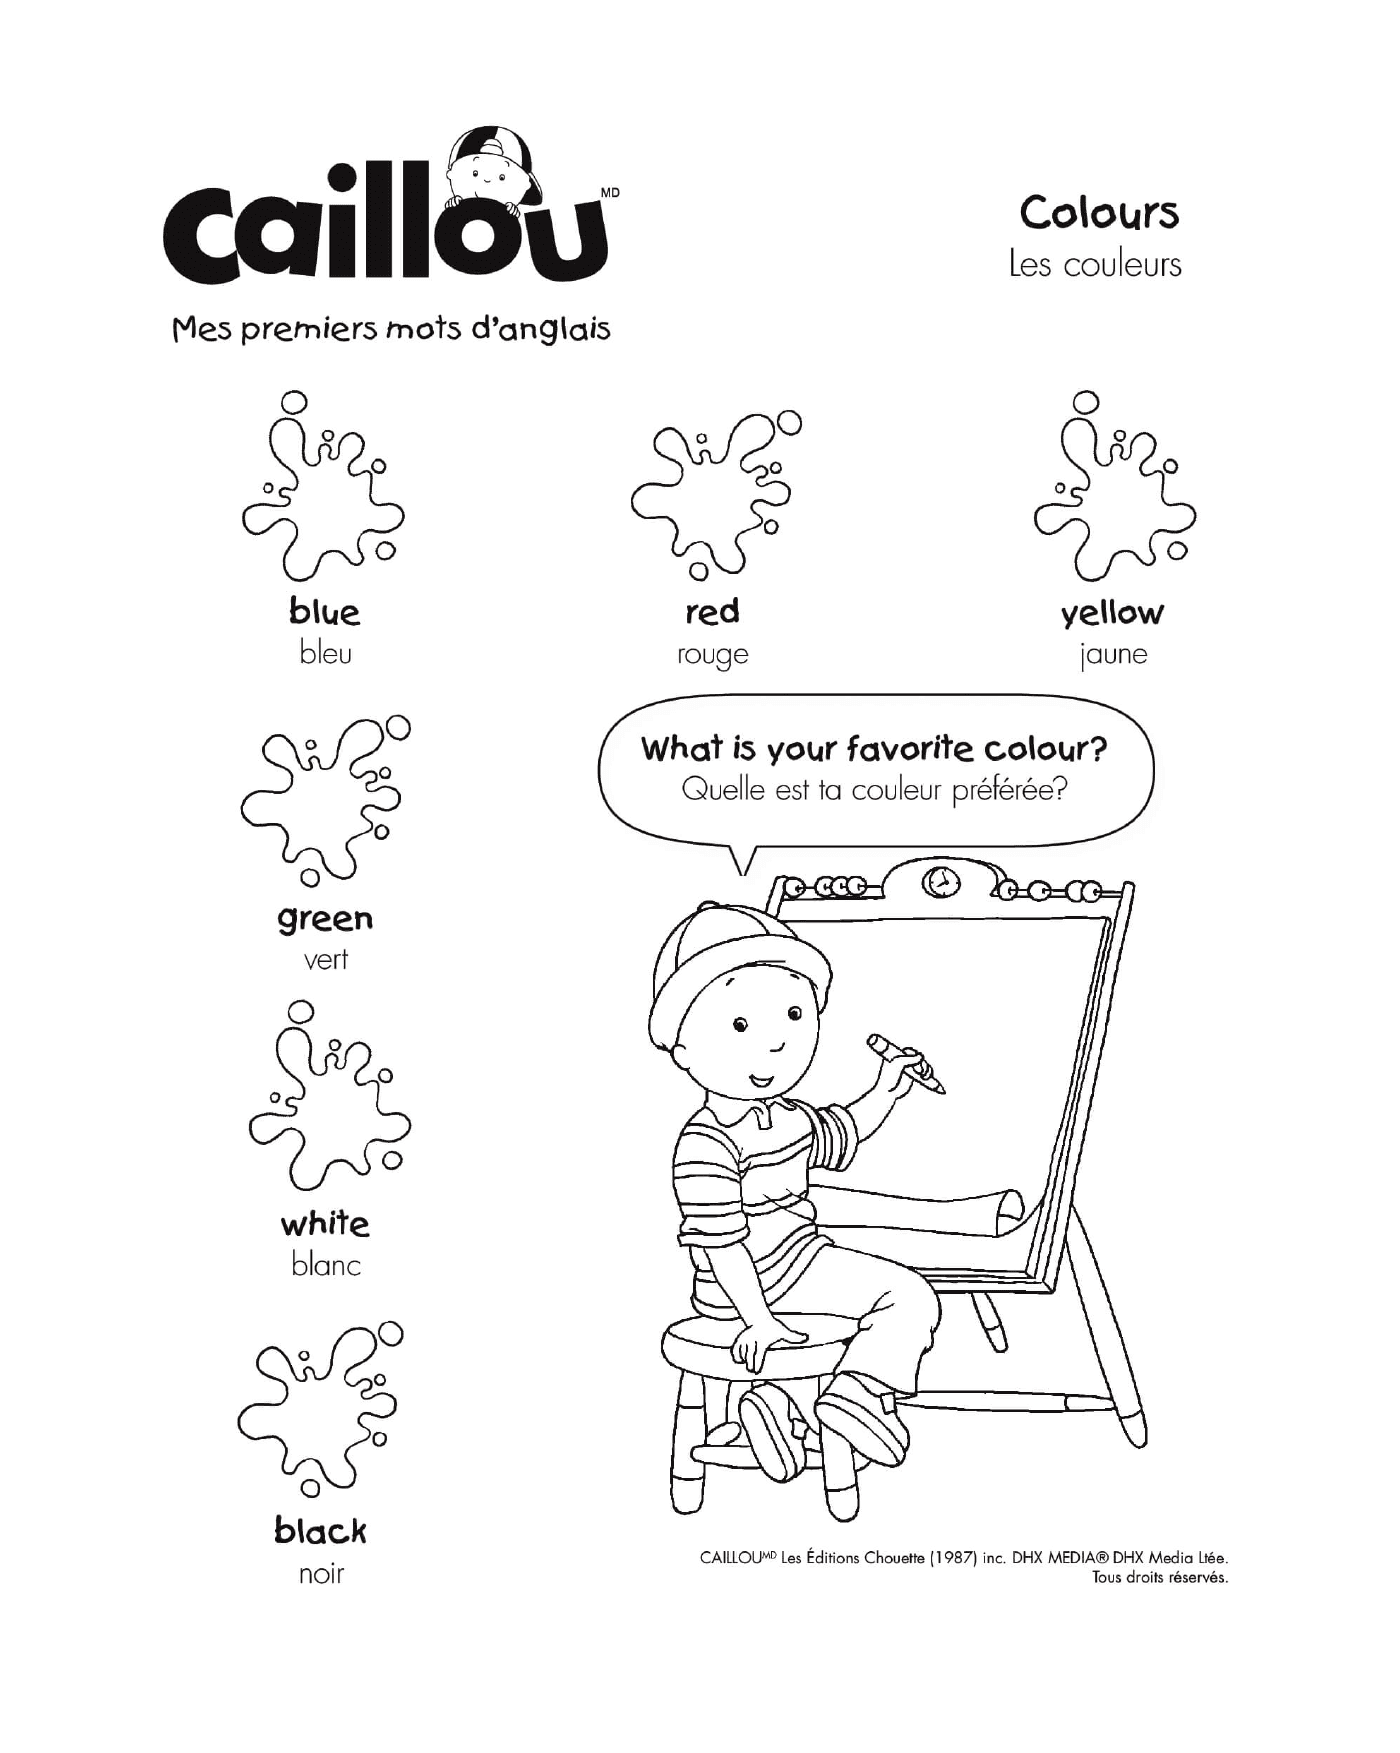  Prime parole in inglese di Caillou 